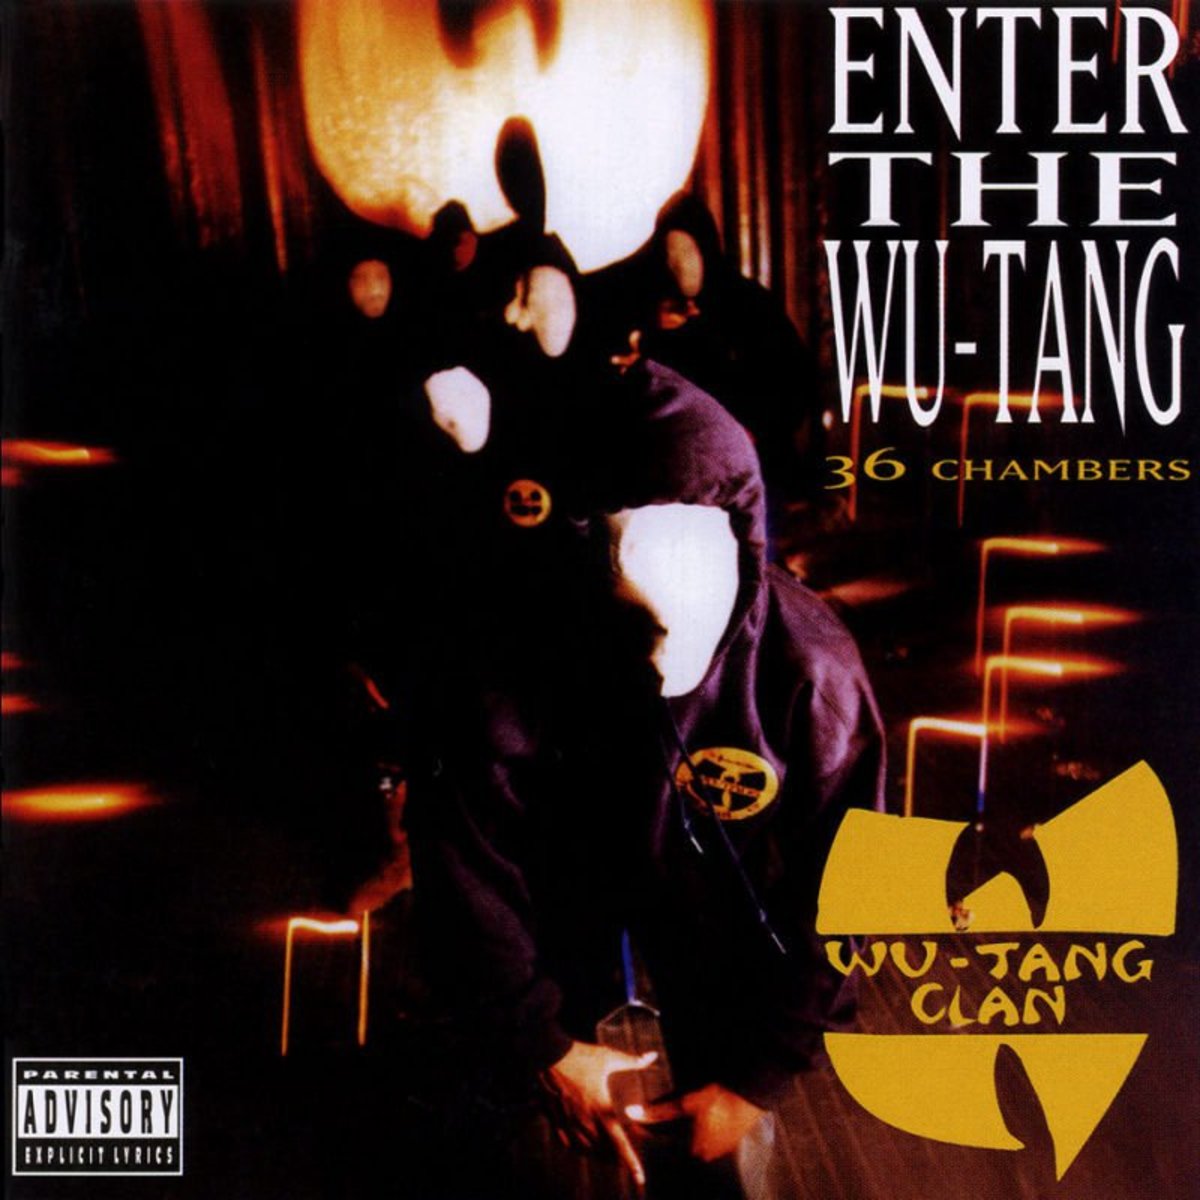 Obal na debutové studiové album klanu Wu-Tang s názvem Enter The Wu-Tang (36 Chambers). Foto: BMG Entertainment.